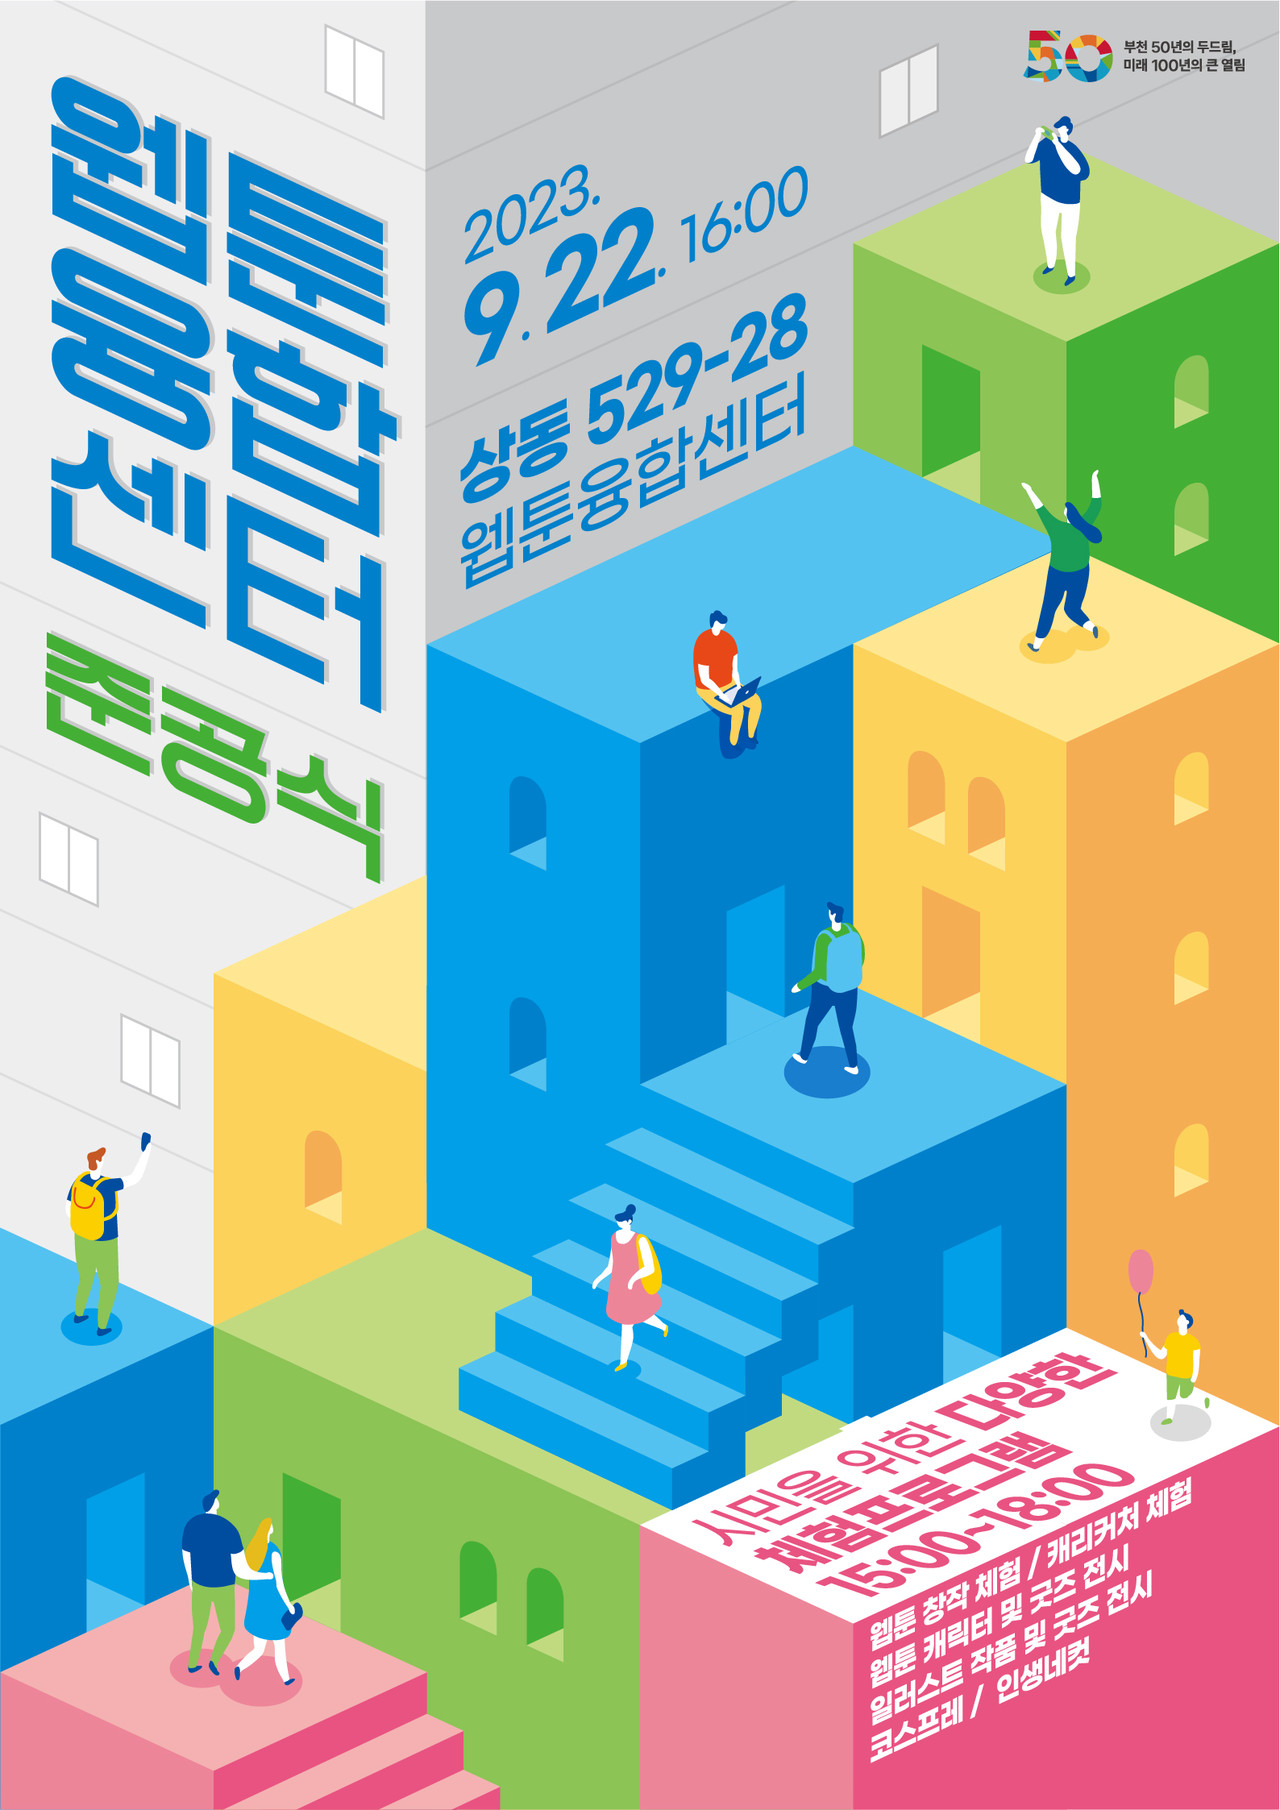 웹툰융합센터 준공식 홍보 포스터